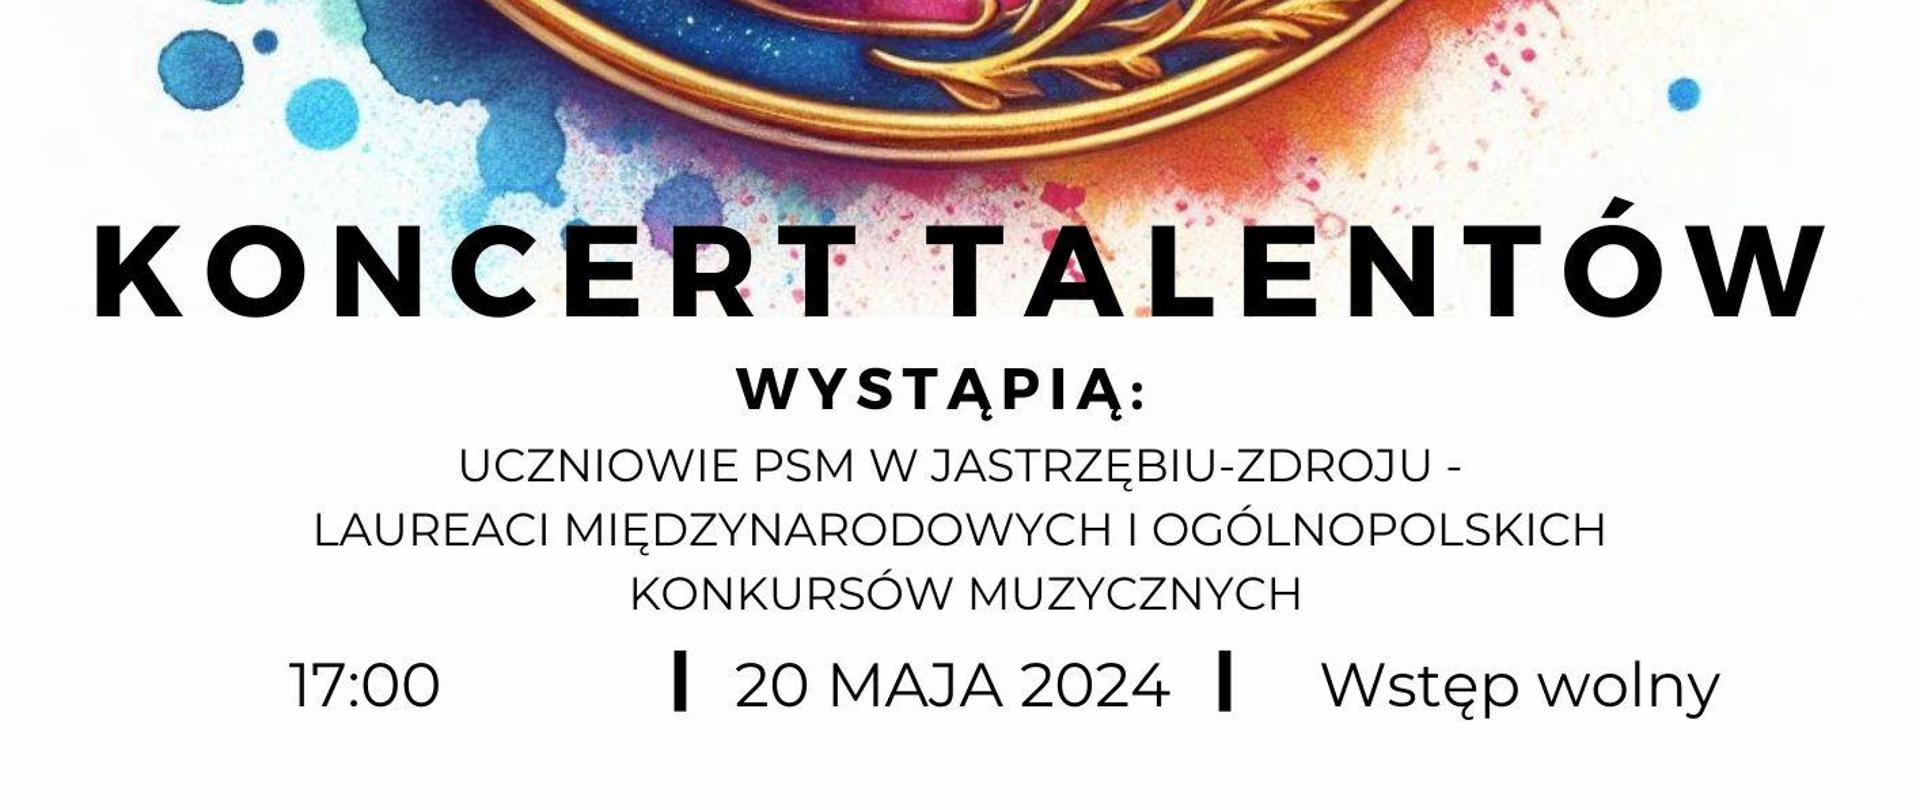 Plakat informacyjny dotyczący Koncertu talentów odbywającego się w dniu 20.05.2024 w godz.17.00.